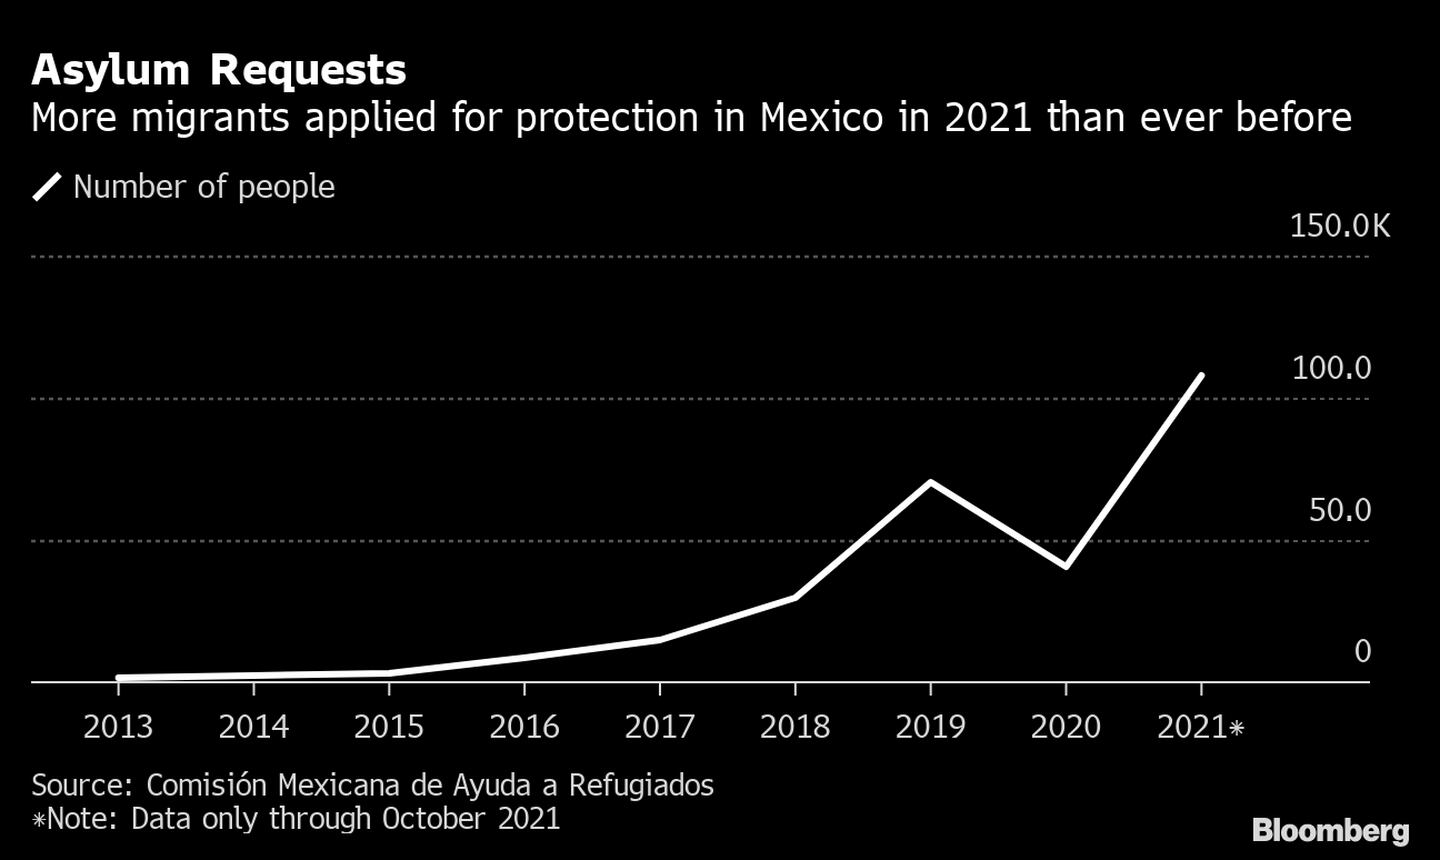 El número de migrantes que han solicitado protección en México en 2021 alcanza niveles récord. dfd